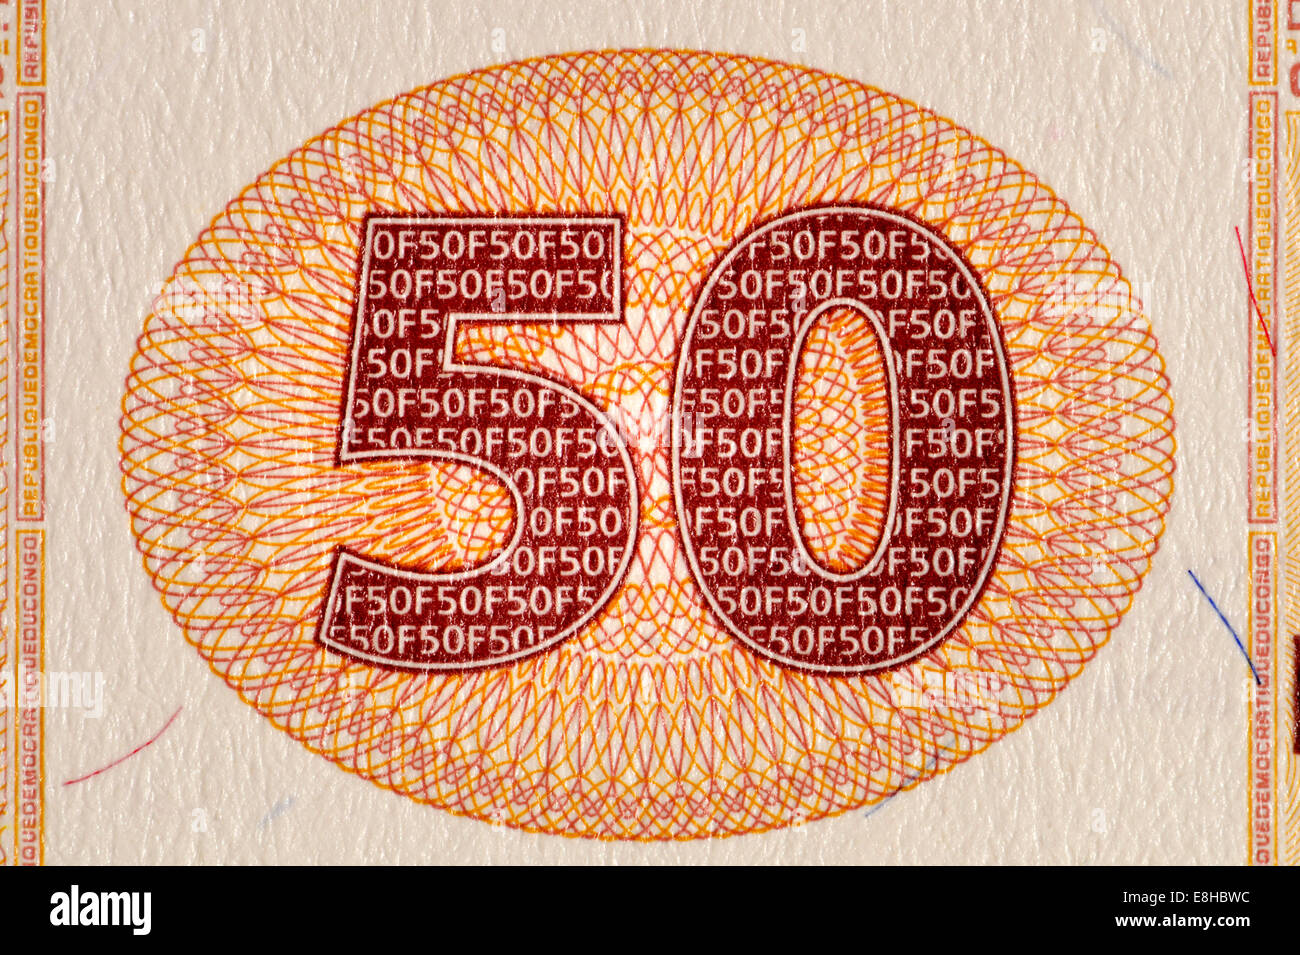 Dettaglio dal Congo 50F banconota banconota che mostra il numero 50 con dettagliate anti-contraffazione la stampa Foto Stock